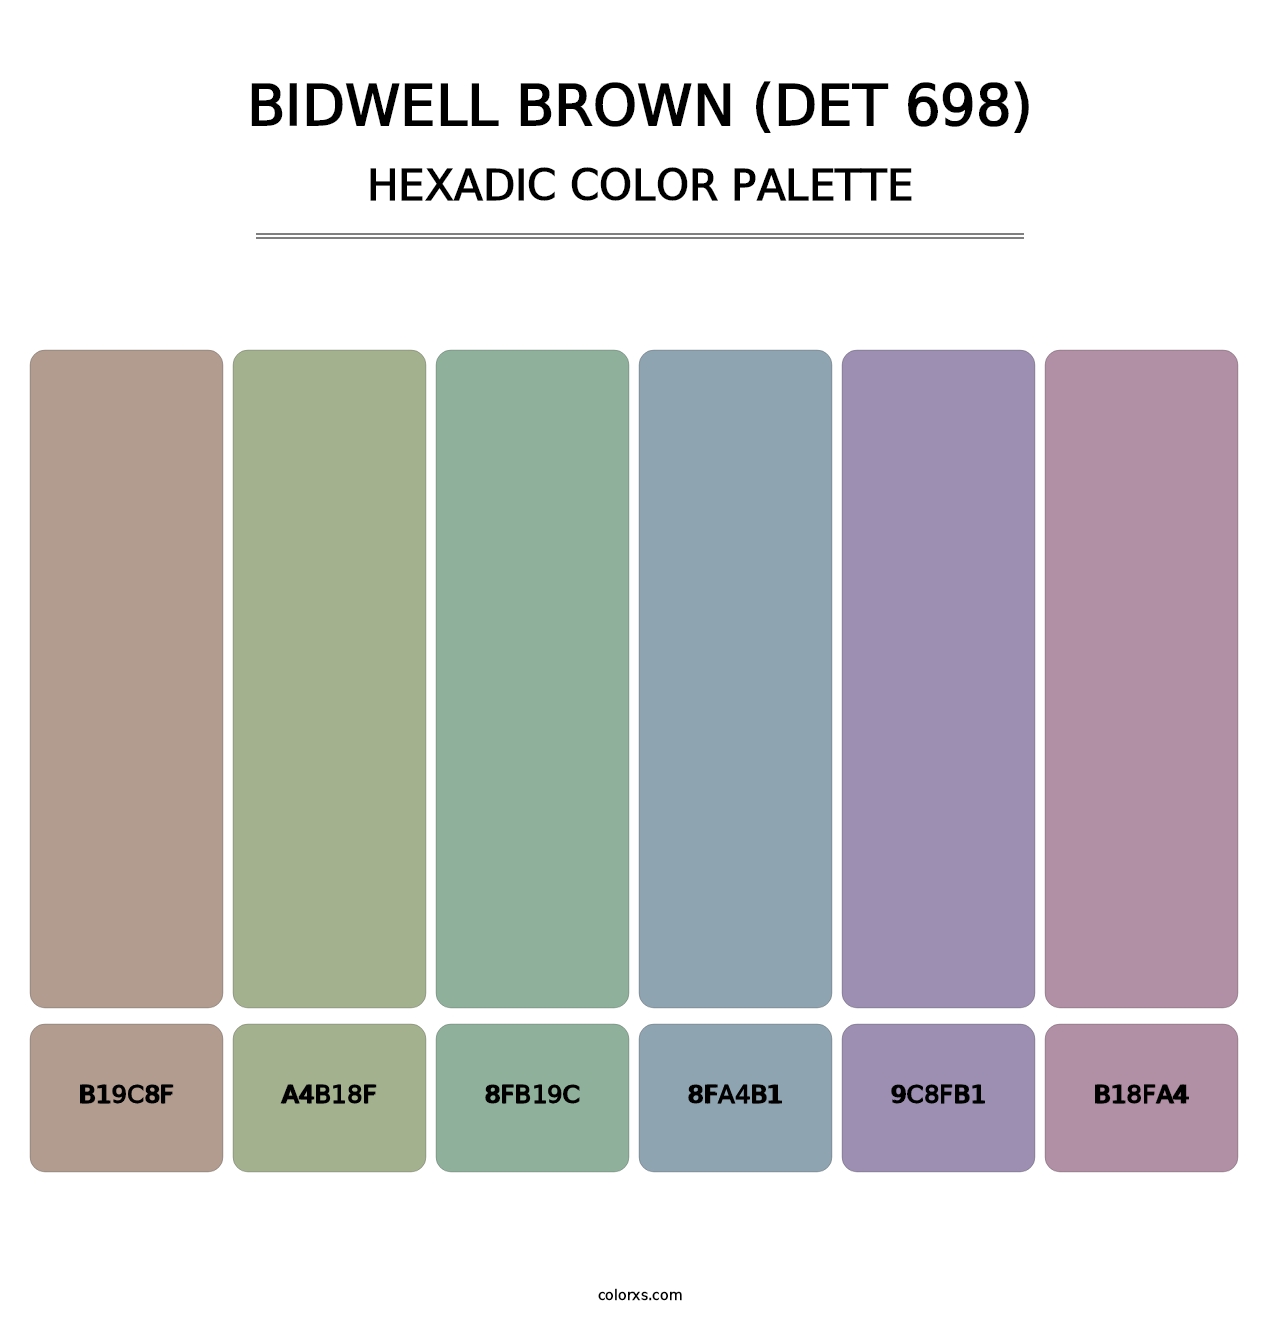 Bidwell Brown (DET 698) - Hexadic Color Palette